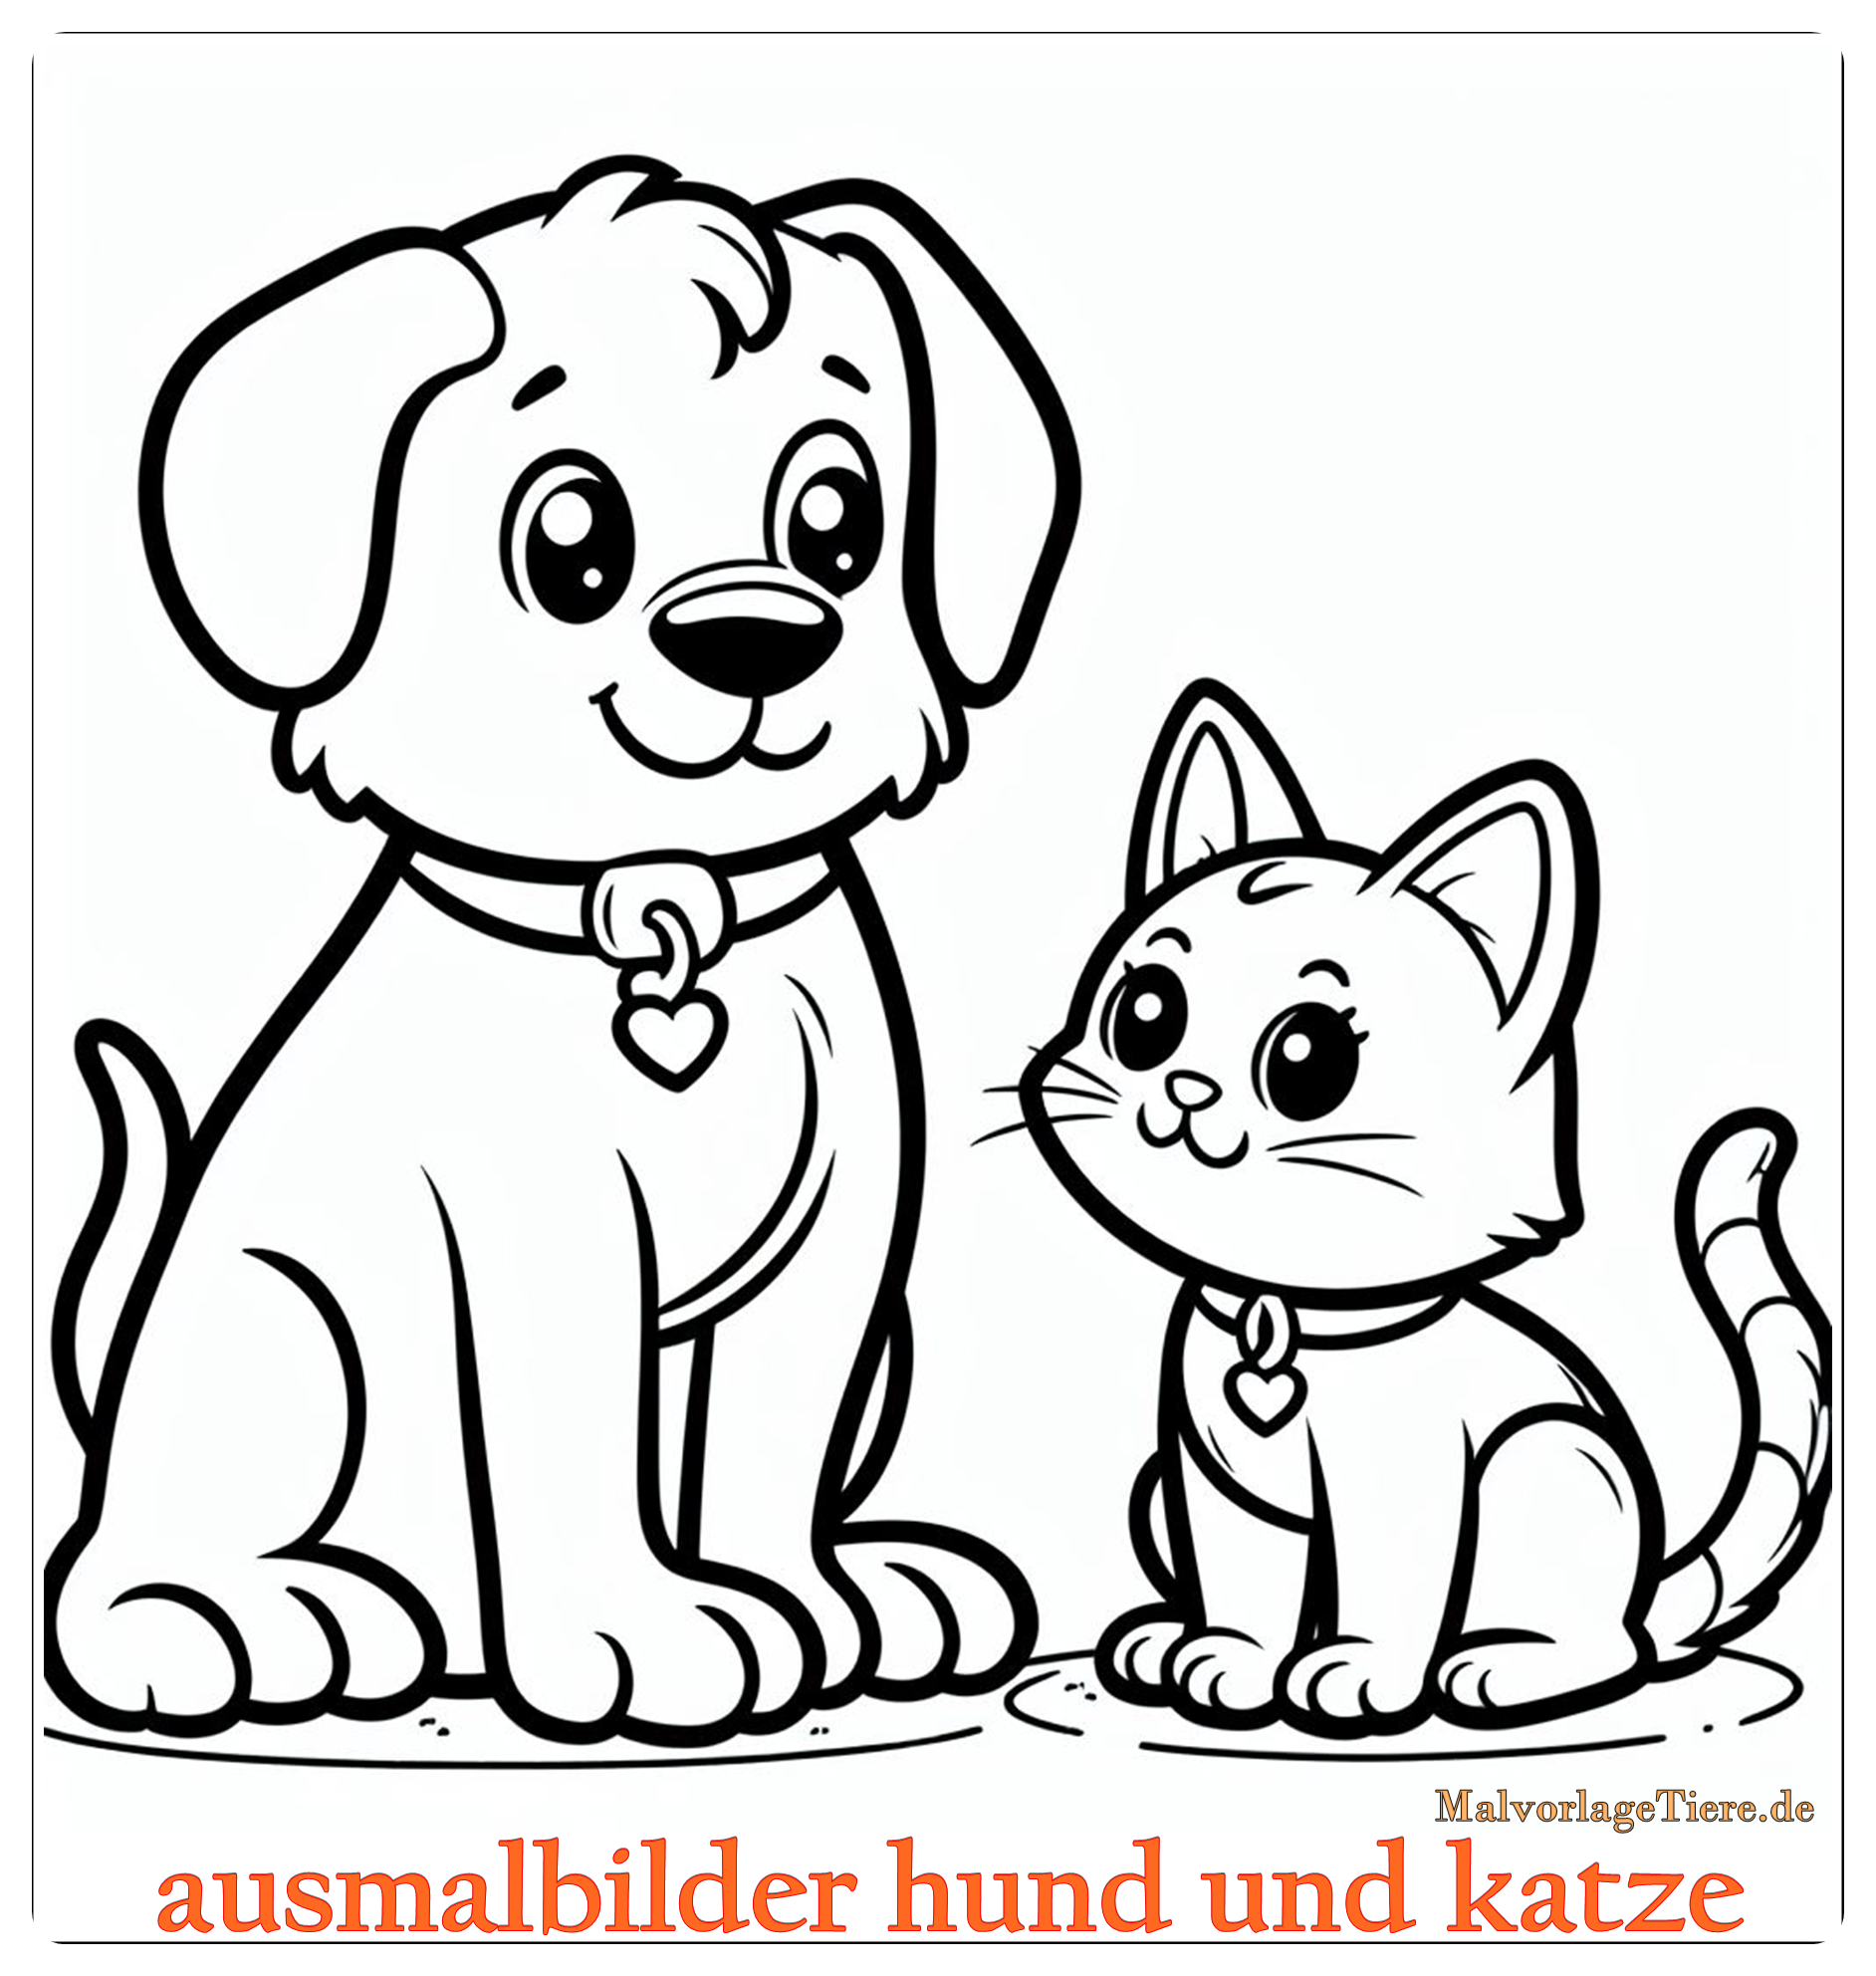 ausmalbilder hund und katze 15 by malvorlagetiere.de